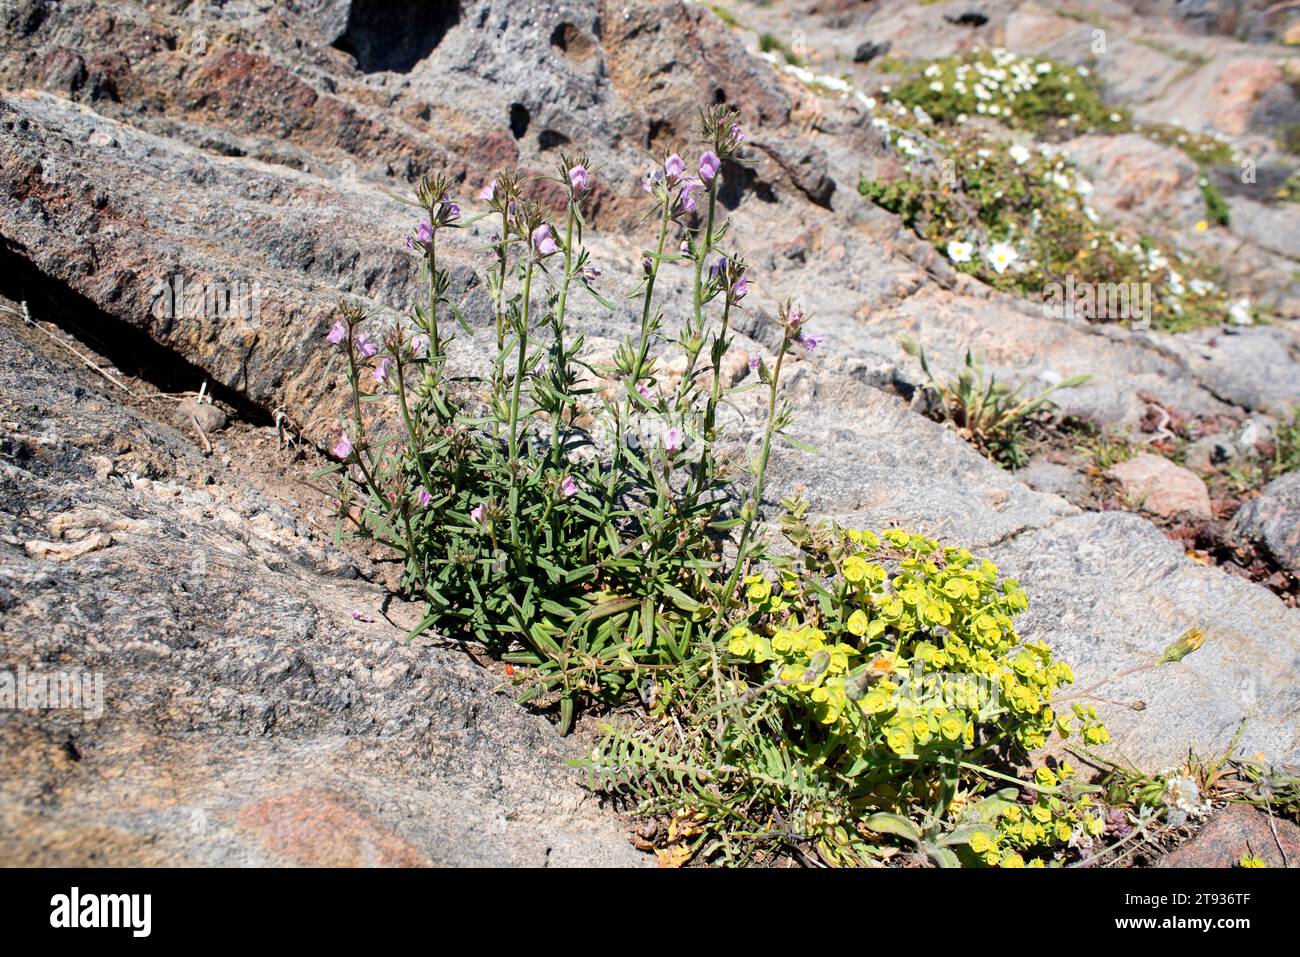 Lesser snapdragon (Antirrhinum orontium or Misopates orontium) is an annual herb native to Europe. This photo was taken in Cap de Creus Natural Park, Stock Photo